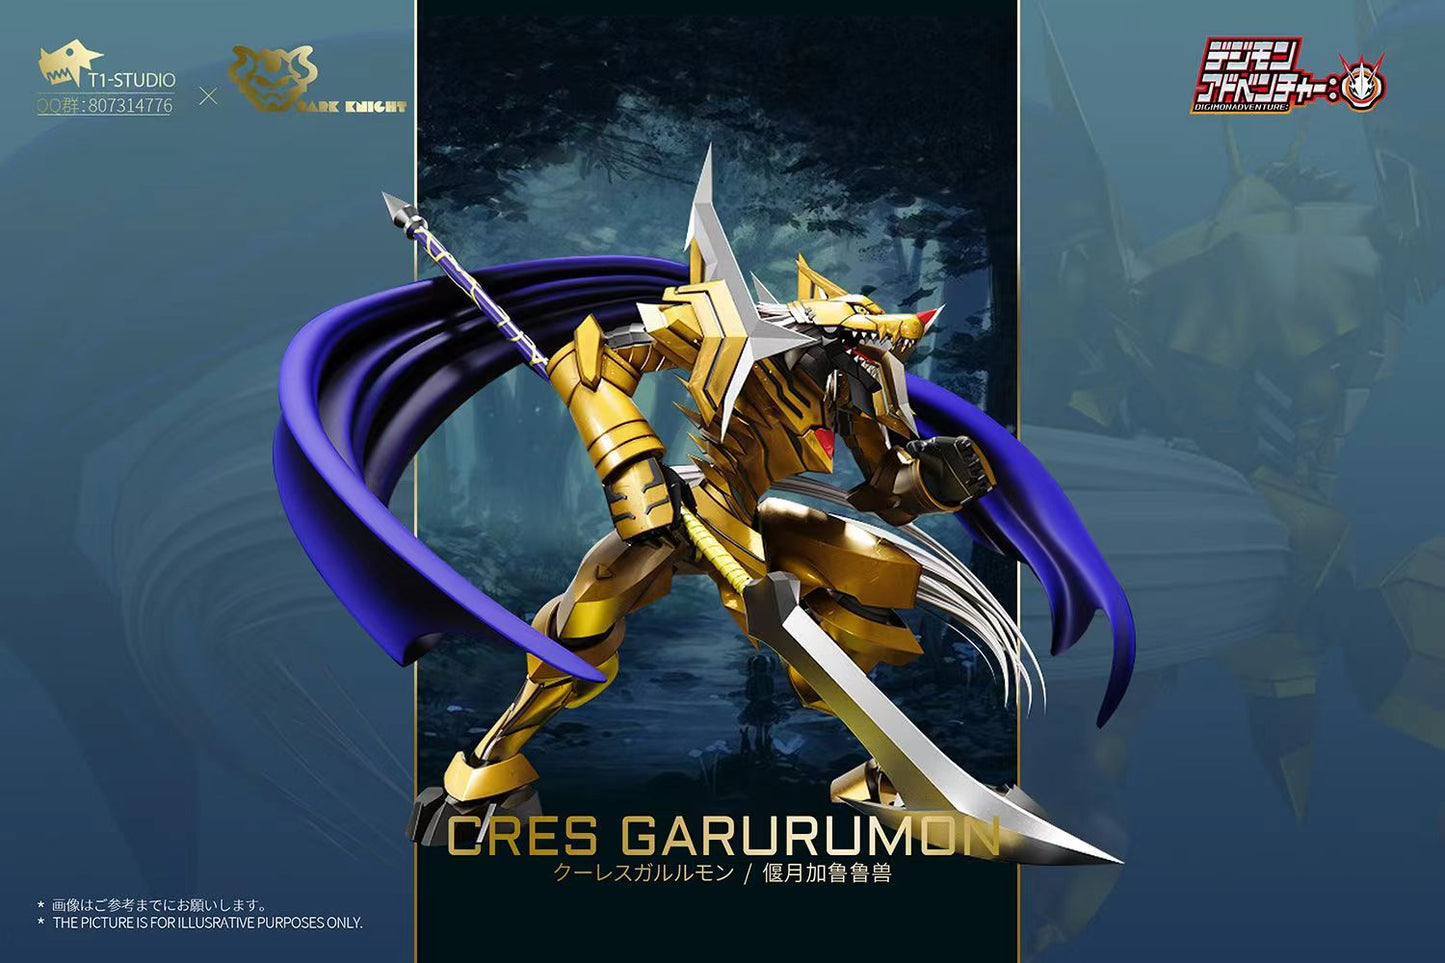 〖Pre-order〗Digimon  Blitz Greymon & Cres Garurumon - T1 Studio